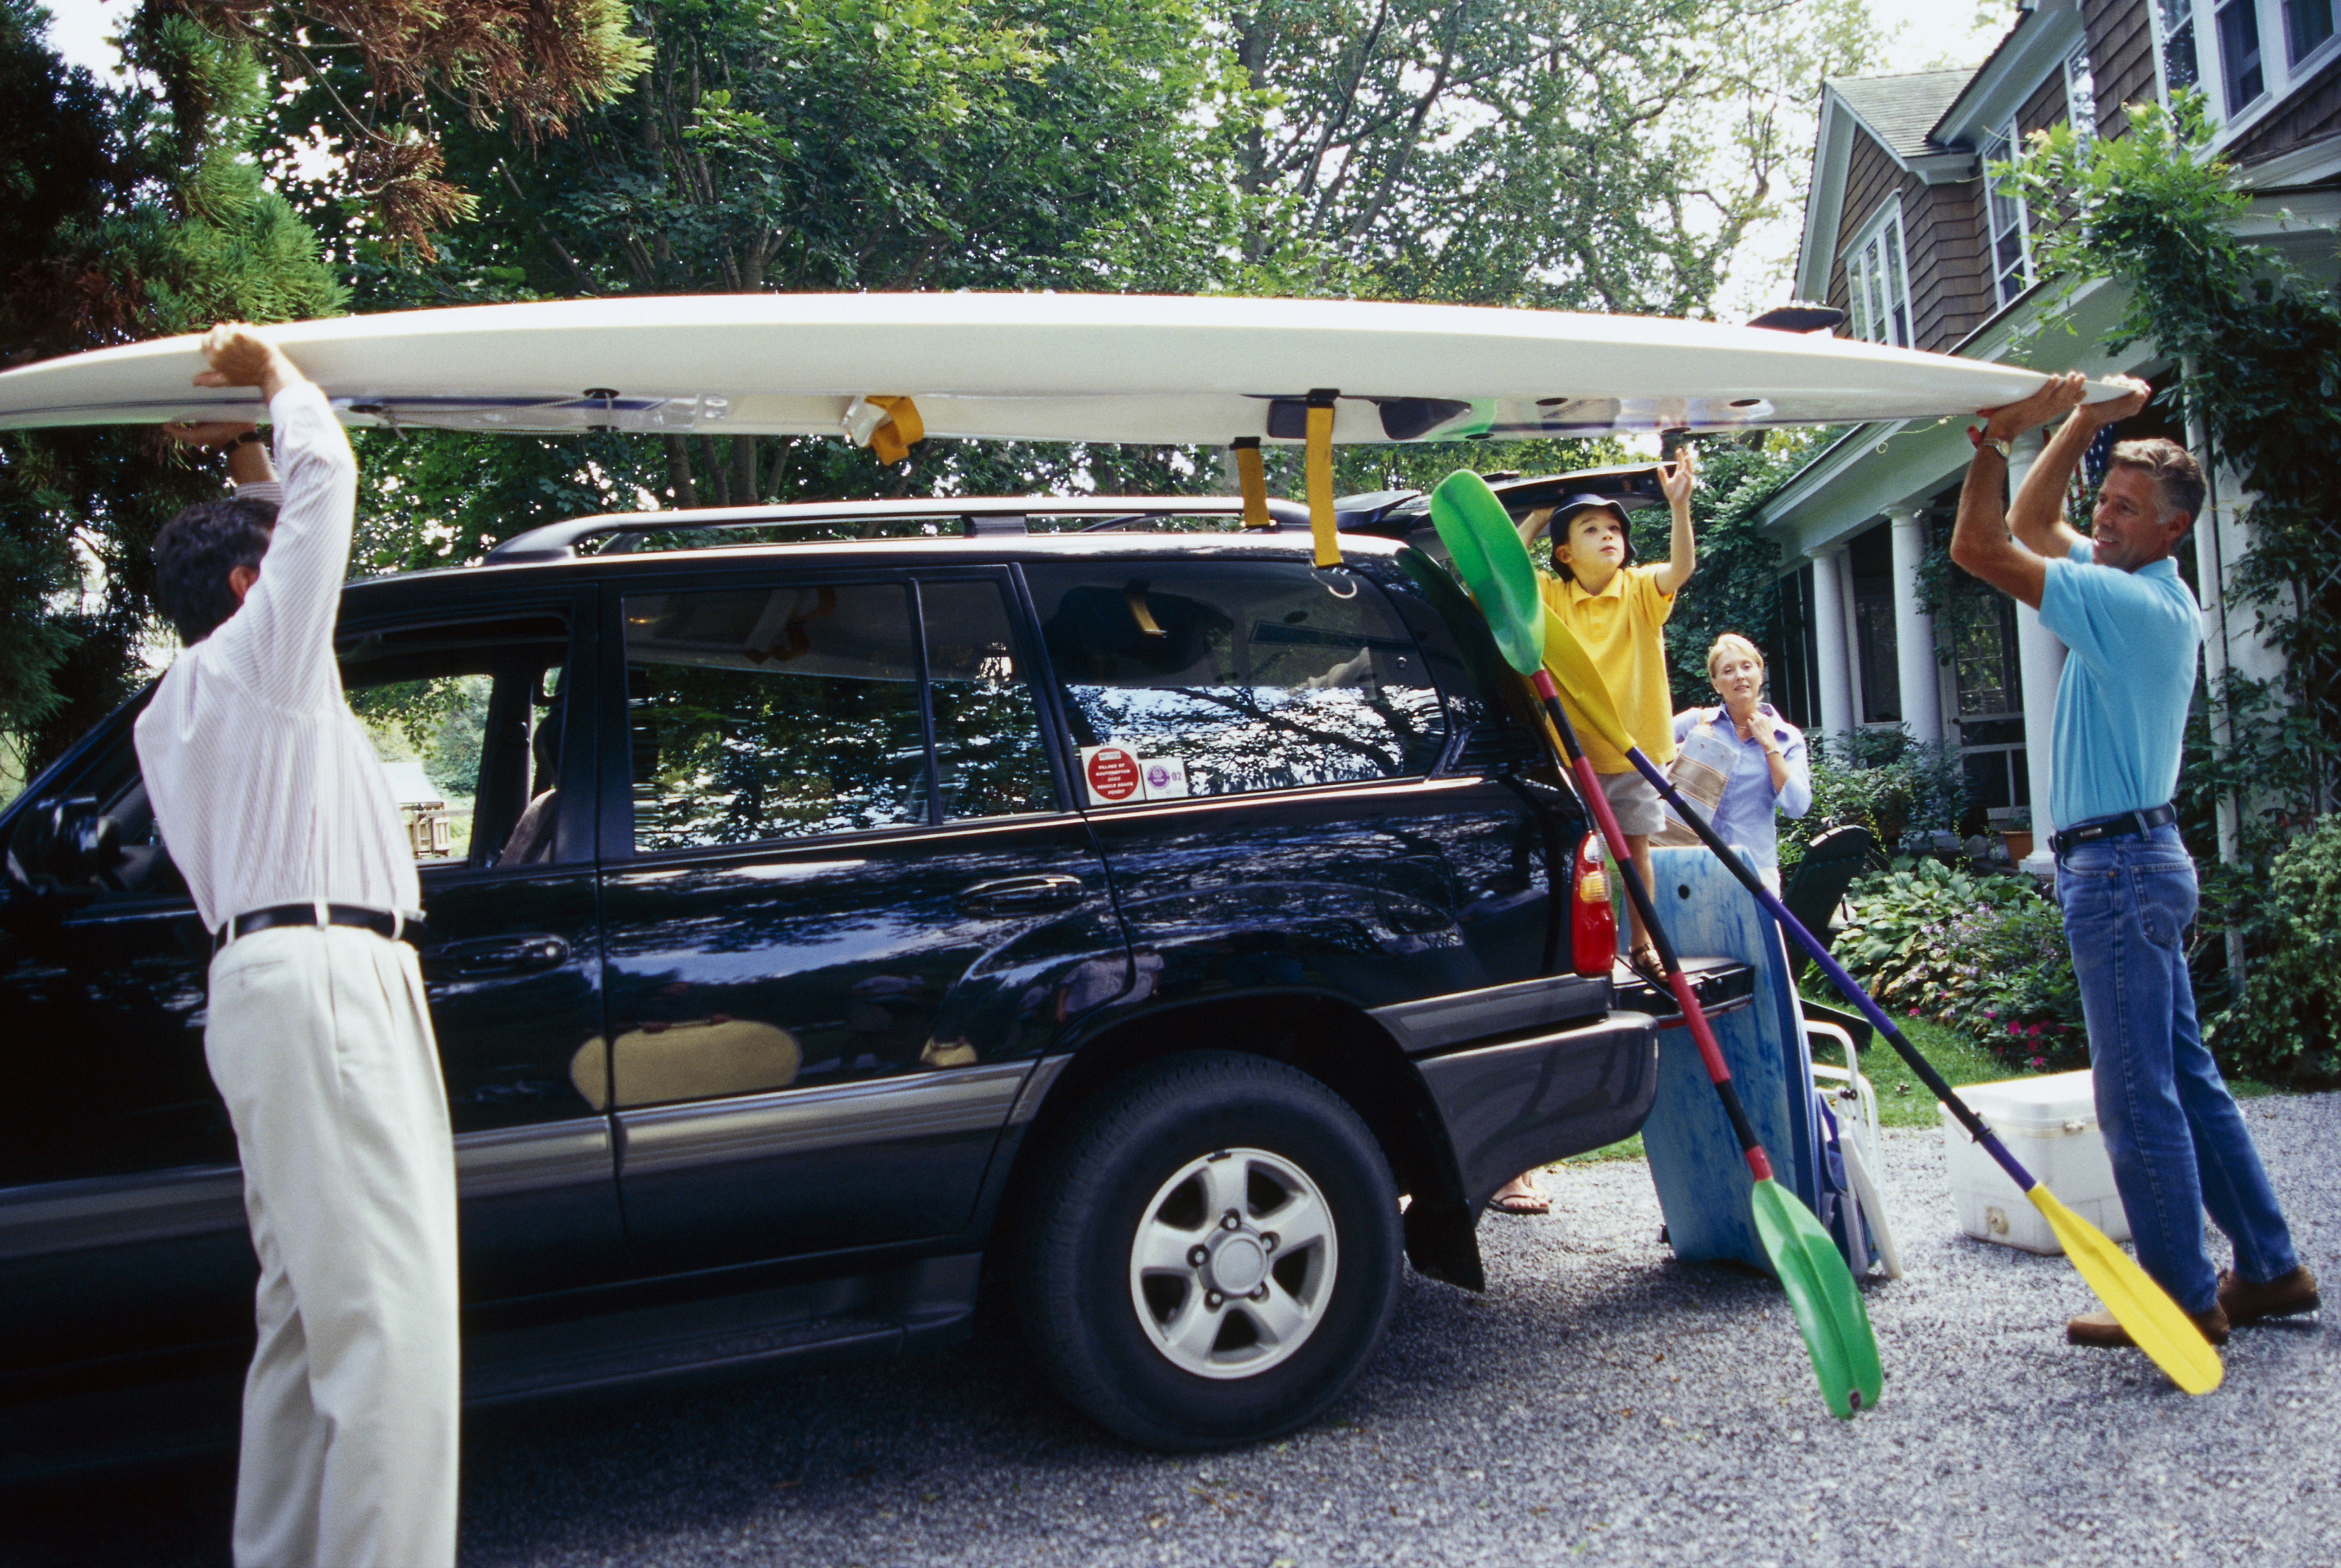 Family putting kayak on car